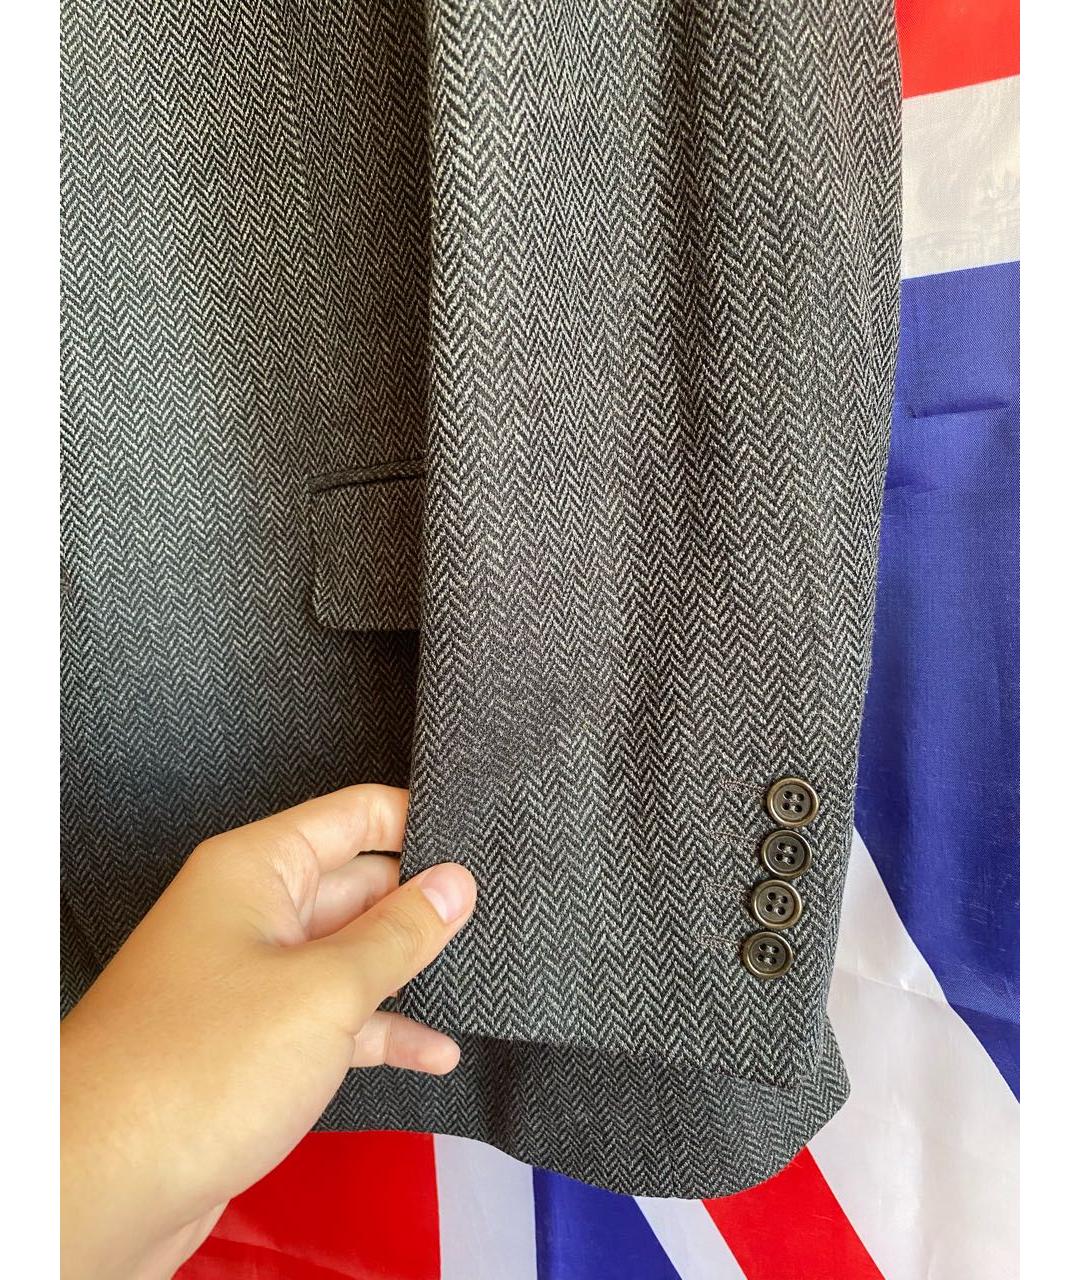 CANALI Серый шерстяной пиджак, фото 3